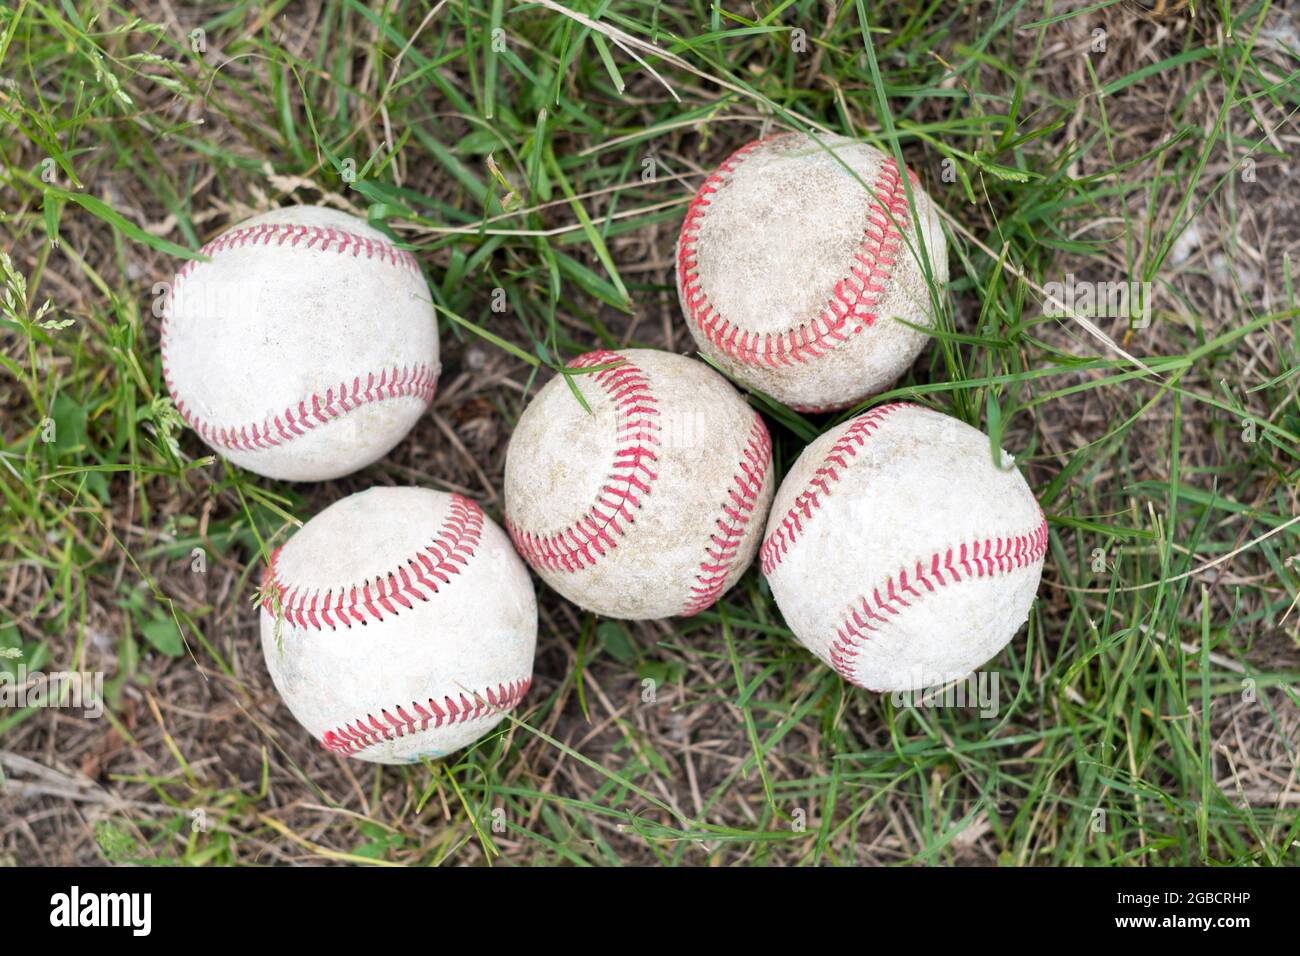 Primo piano baseballs usati su campo verde erba, concetto sportivo Foto Stock